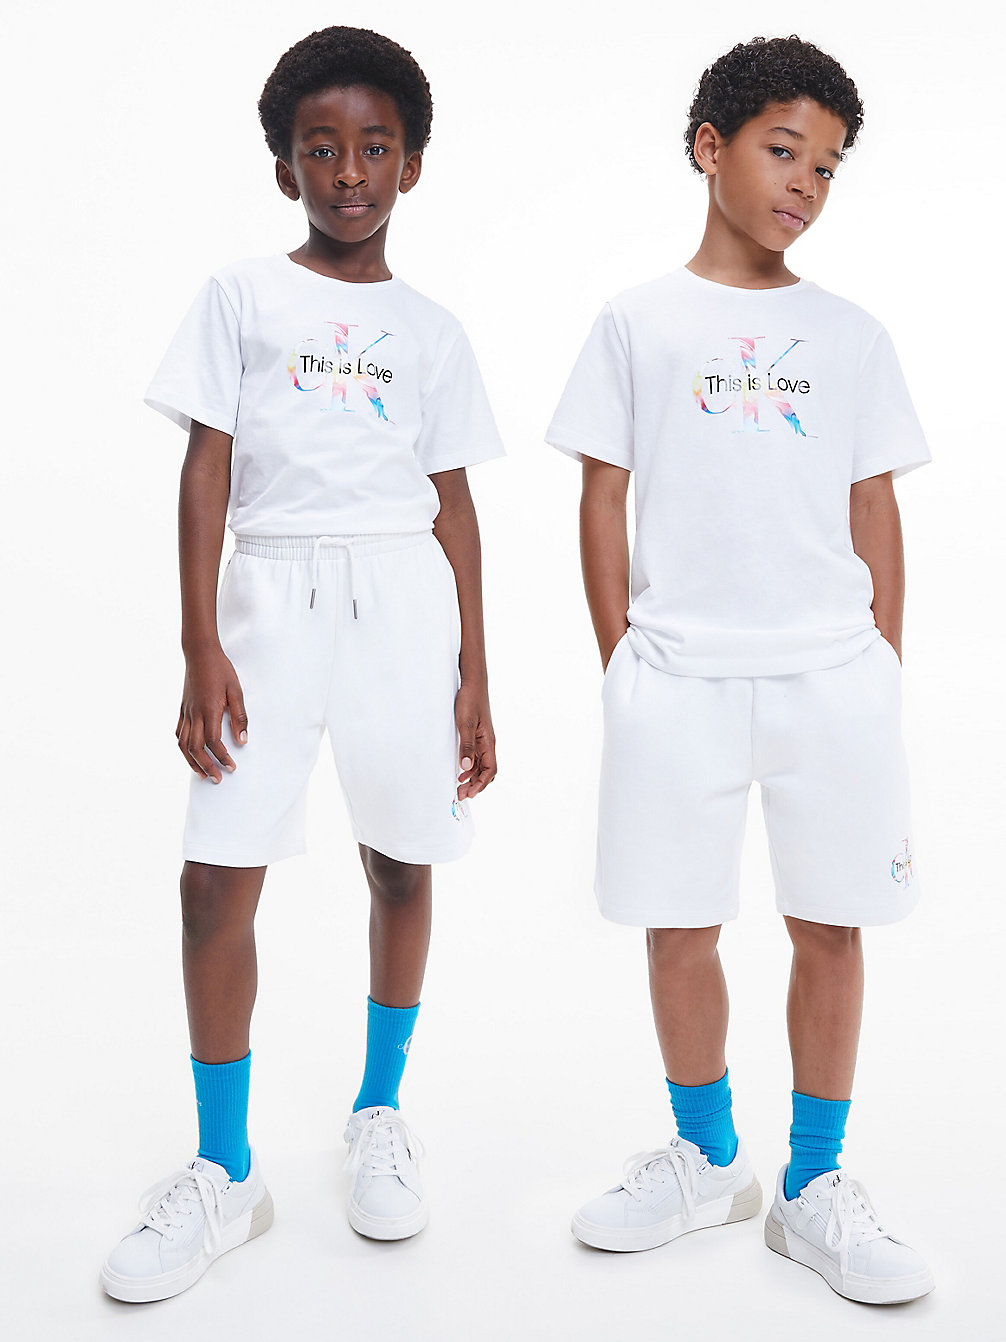 BRIGHT WHITE > Unisex Sweatshirt Met Monogram - Pride > undefined kids unisex - Calvin Klein